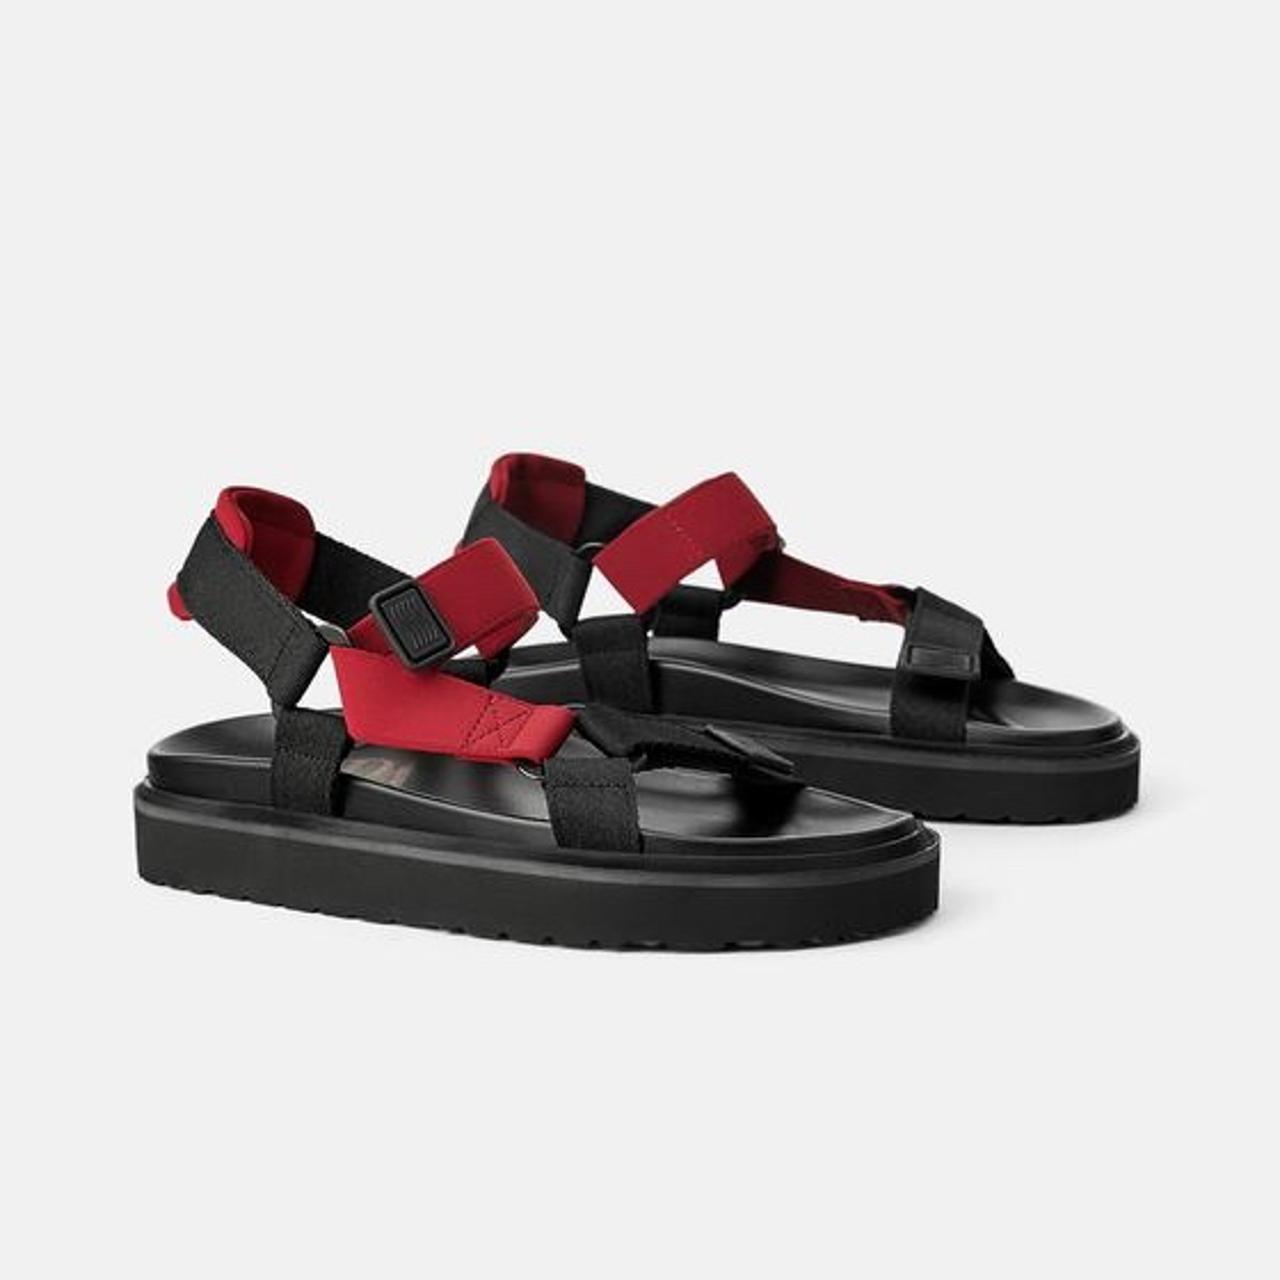 ZARA // strappy sandals • color: black & red •... - Depop